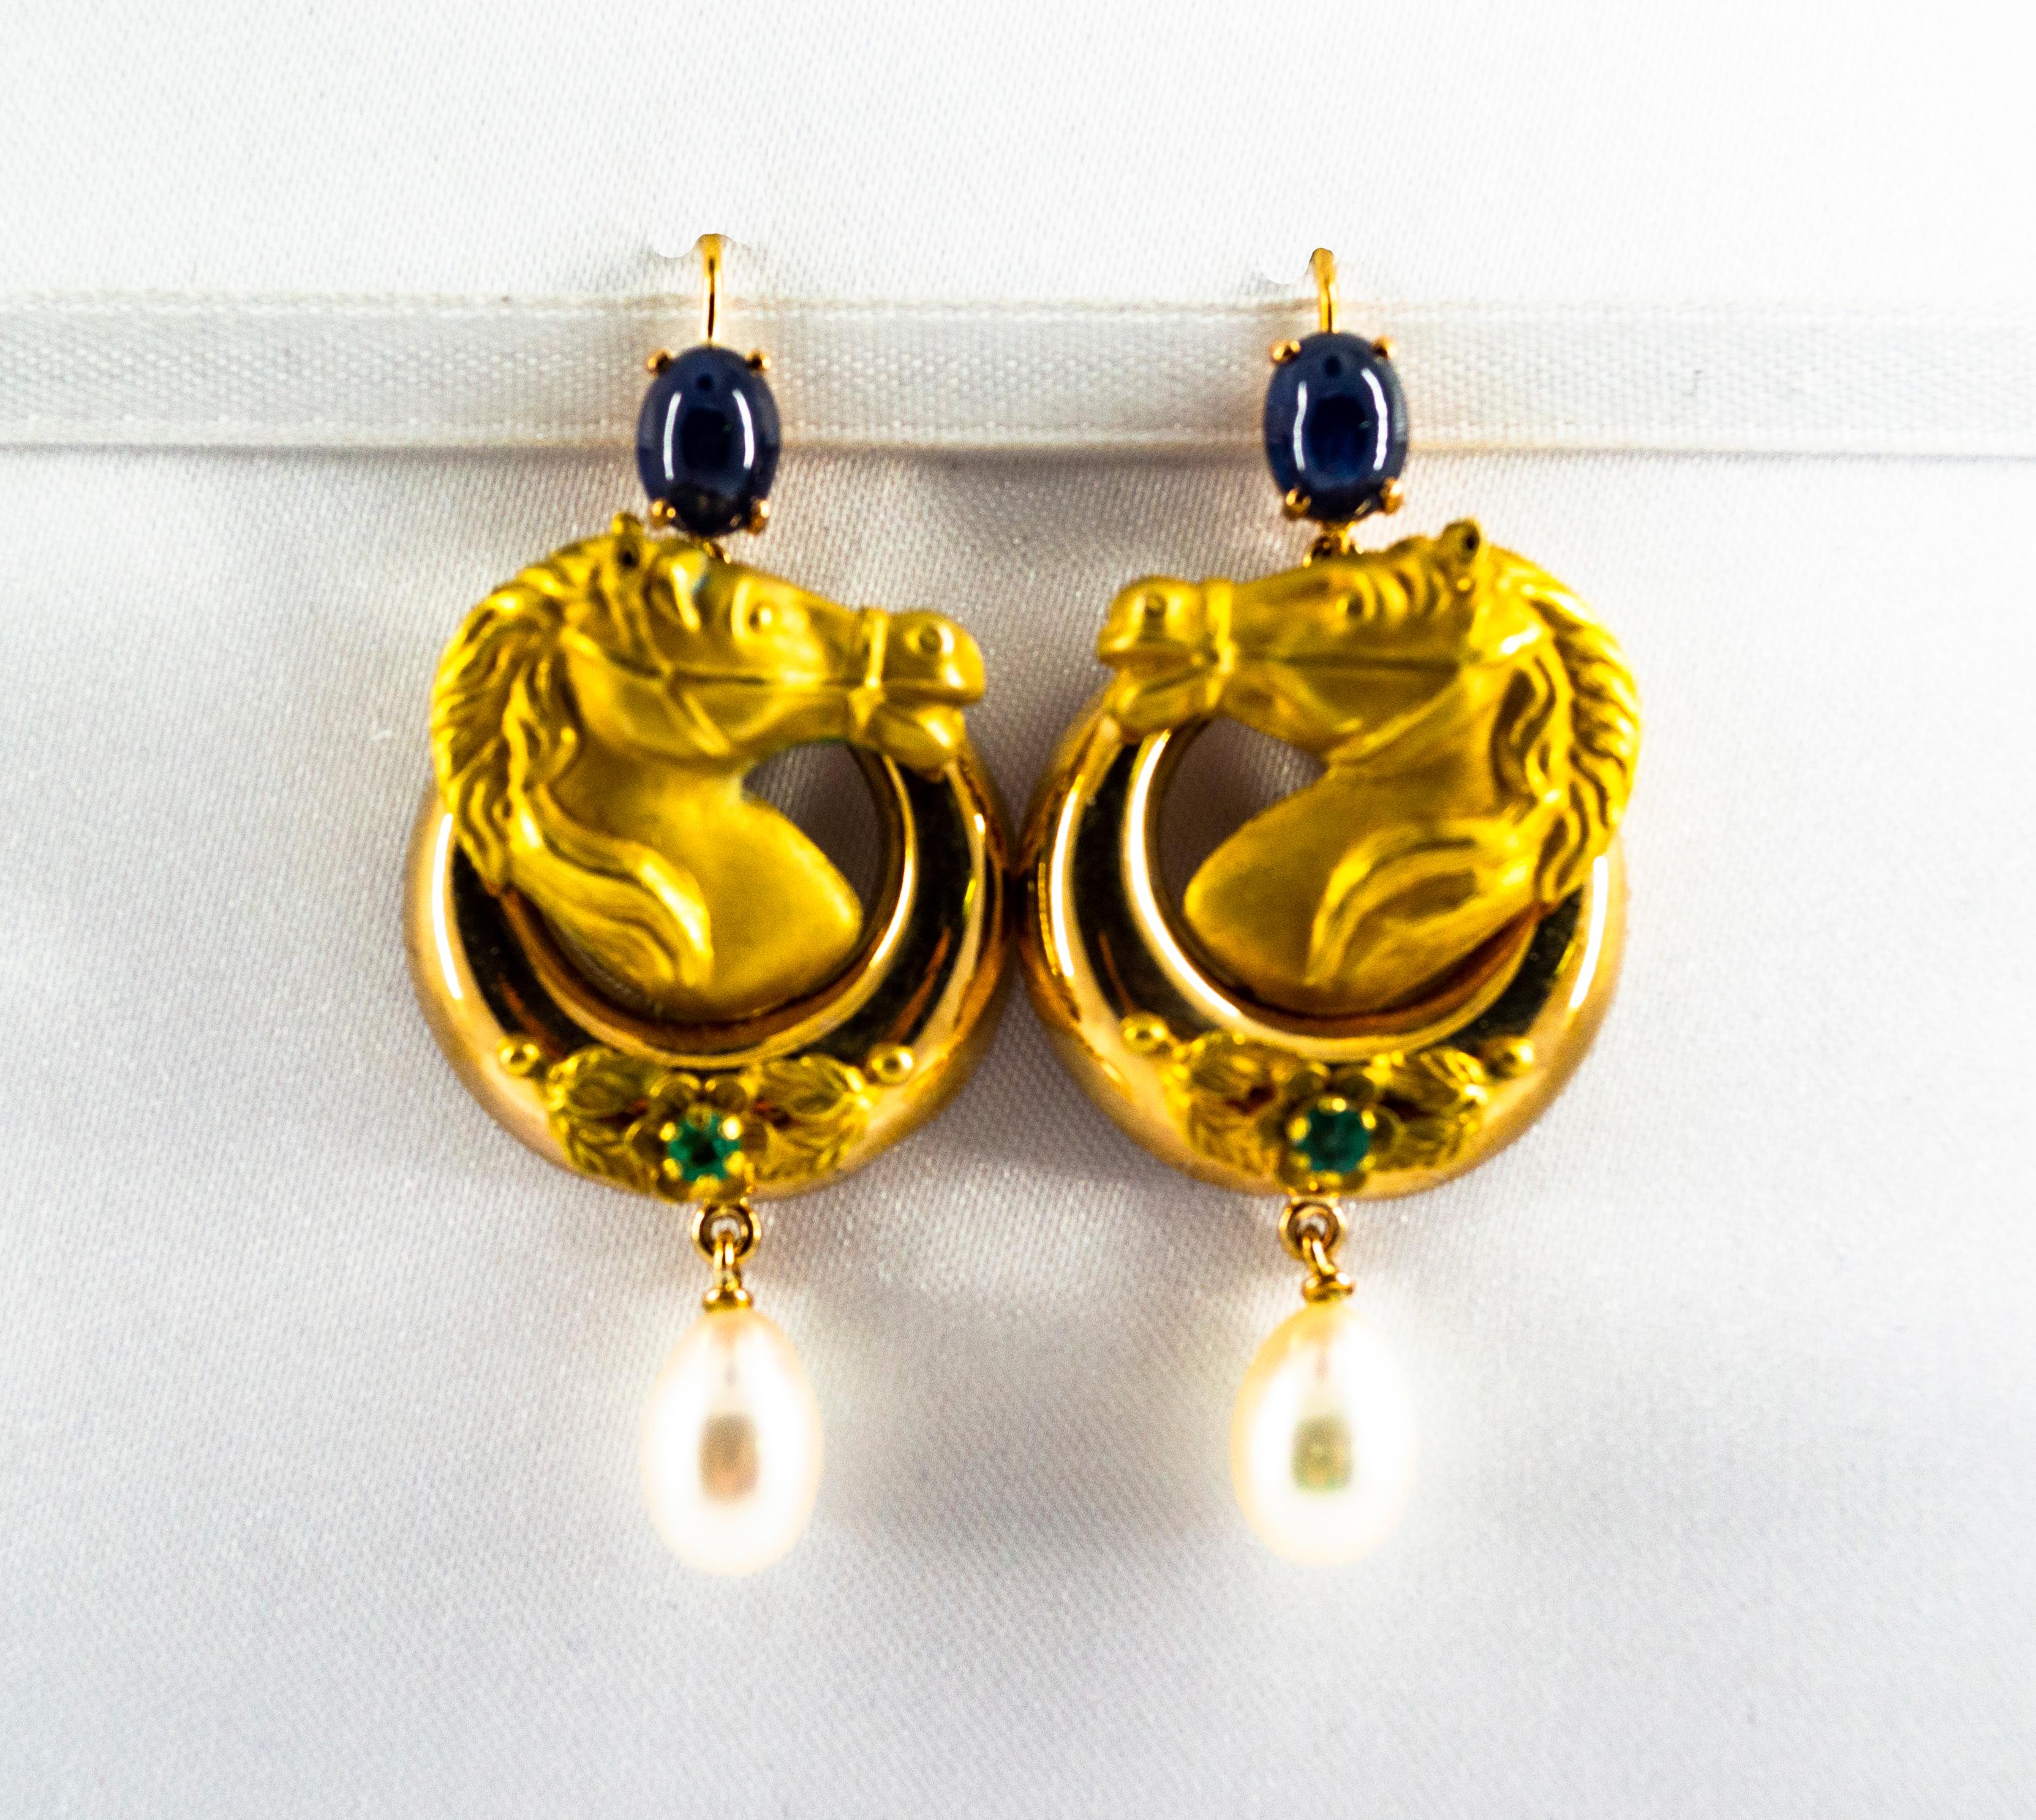 Diese Ohrringe sind aus 14K Gelbgold gefertigt.
Diese Ohrringe bestehen aus 2,30 Karat blauen Saphiren und Smaragden.
Diese Ohrringe haben zwei Perlen.
Alle unsere Ohrringe haben Stifte für gepiercte Ohren, aber wir können den Verschluss ändern und